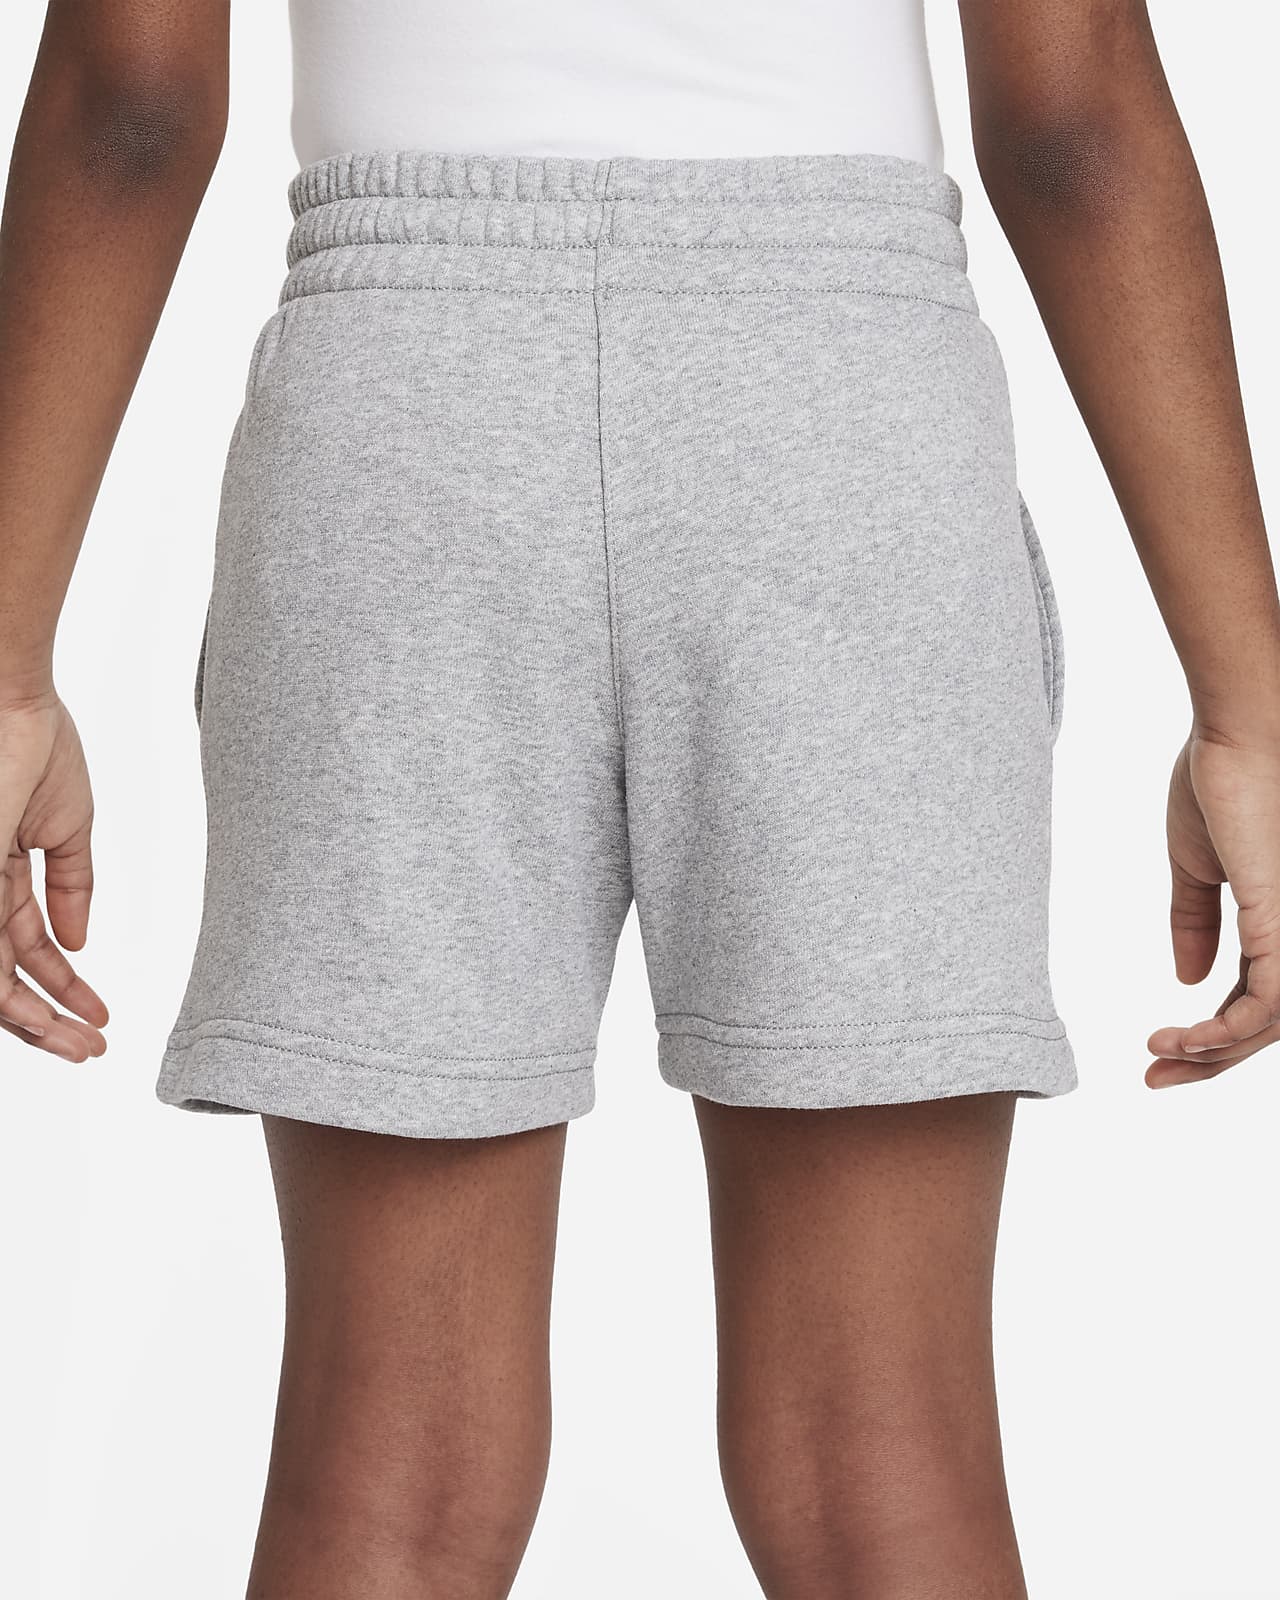 Nike Sportswear Club Fleece Women's Shorts